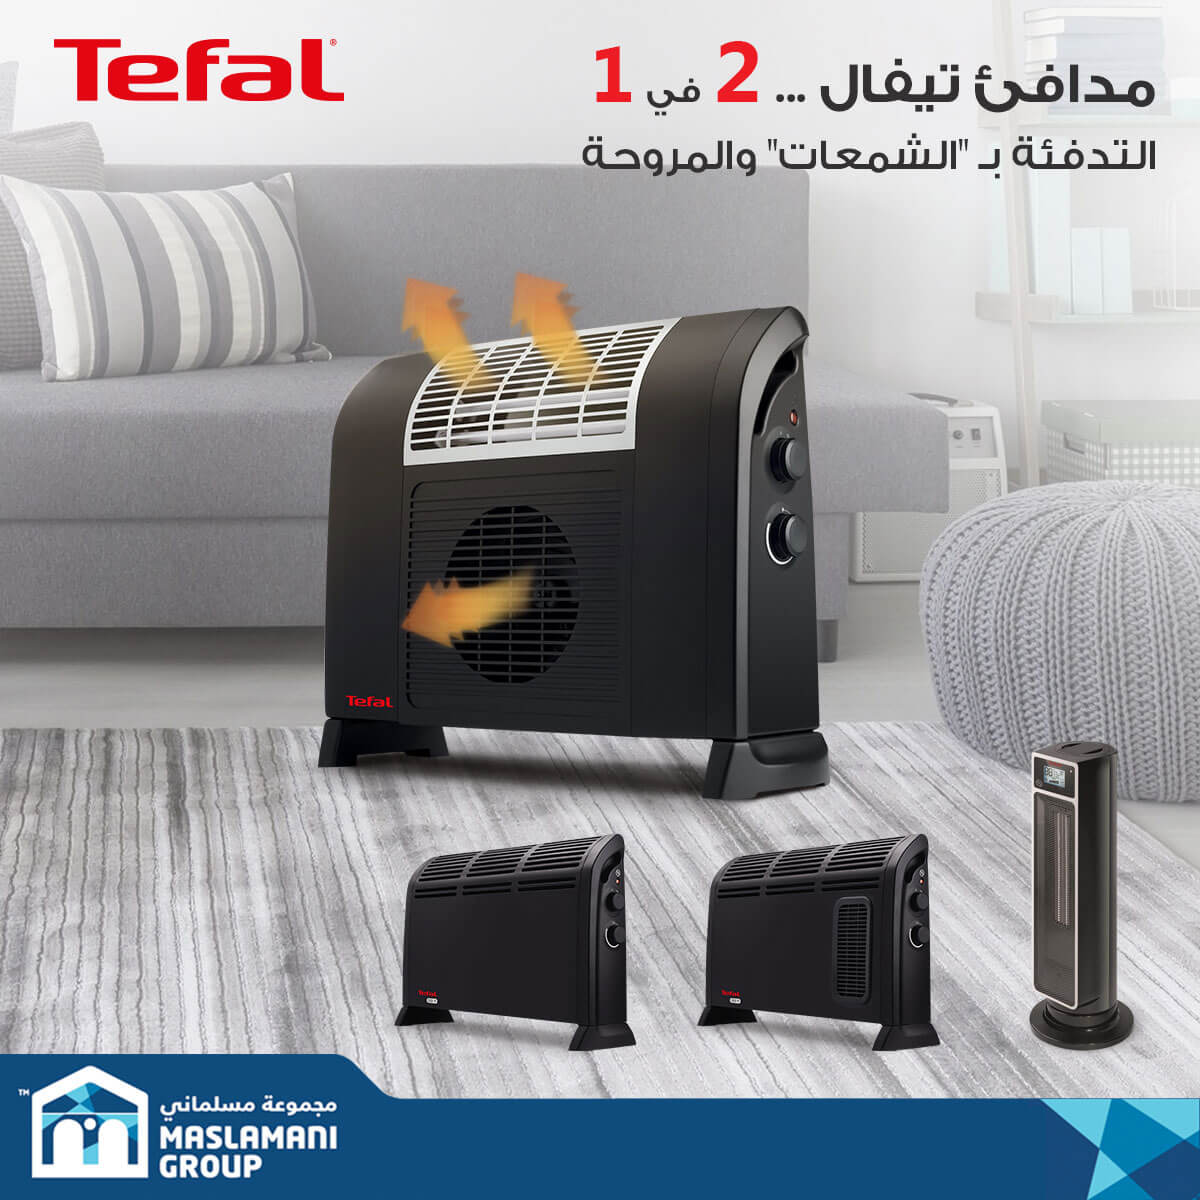 أجهزة التدفئة من تيفال